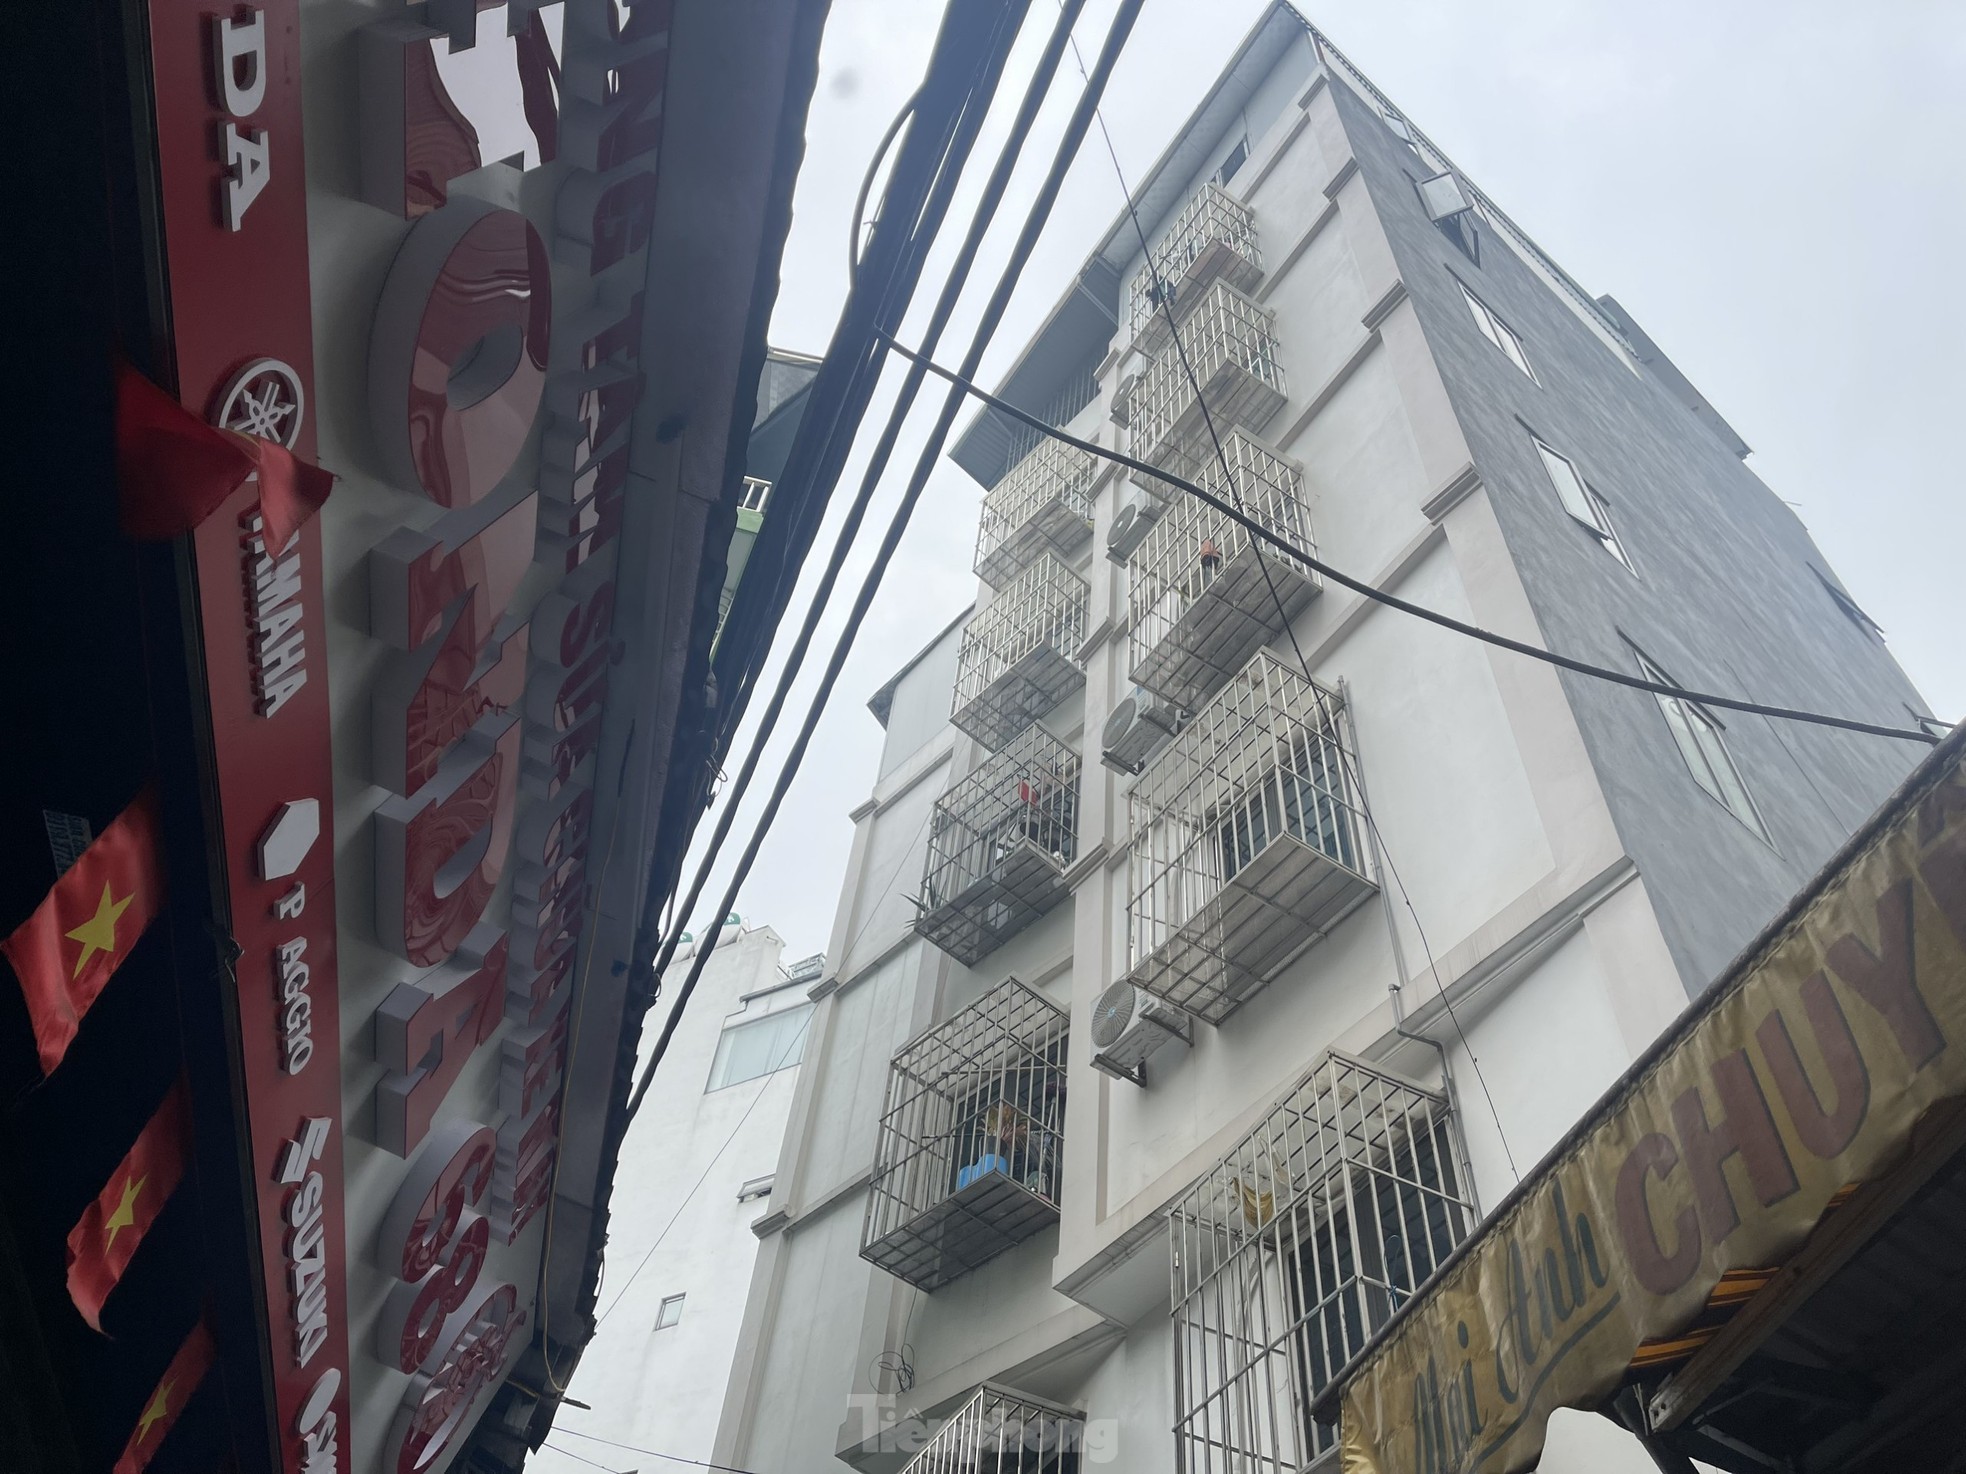 Nhà trọ, chung cư mini tràn lan không đảm bảo phòng cháy chữa cháy ở Hà Nội - Ảnh 3